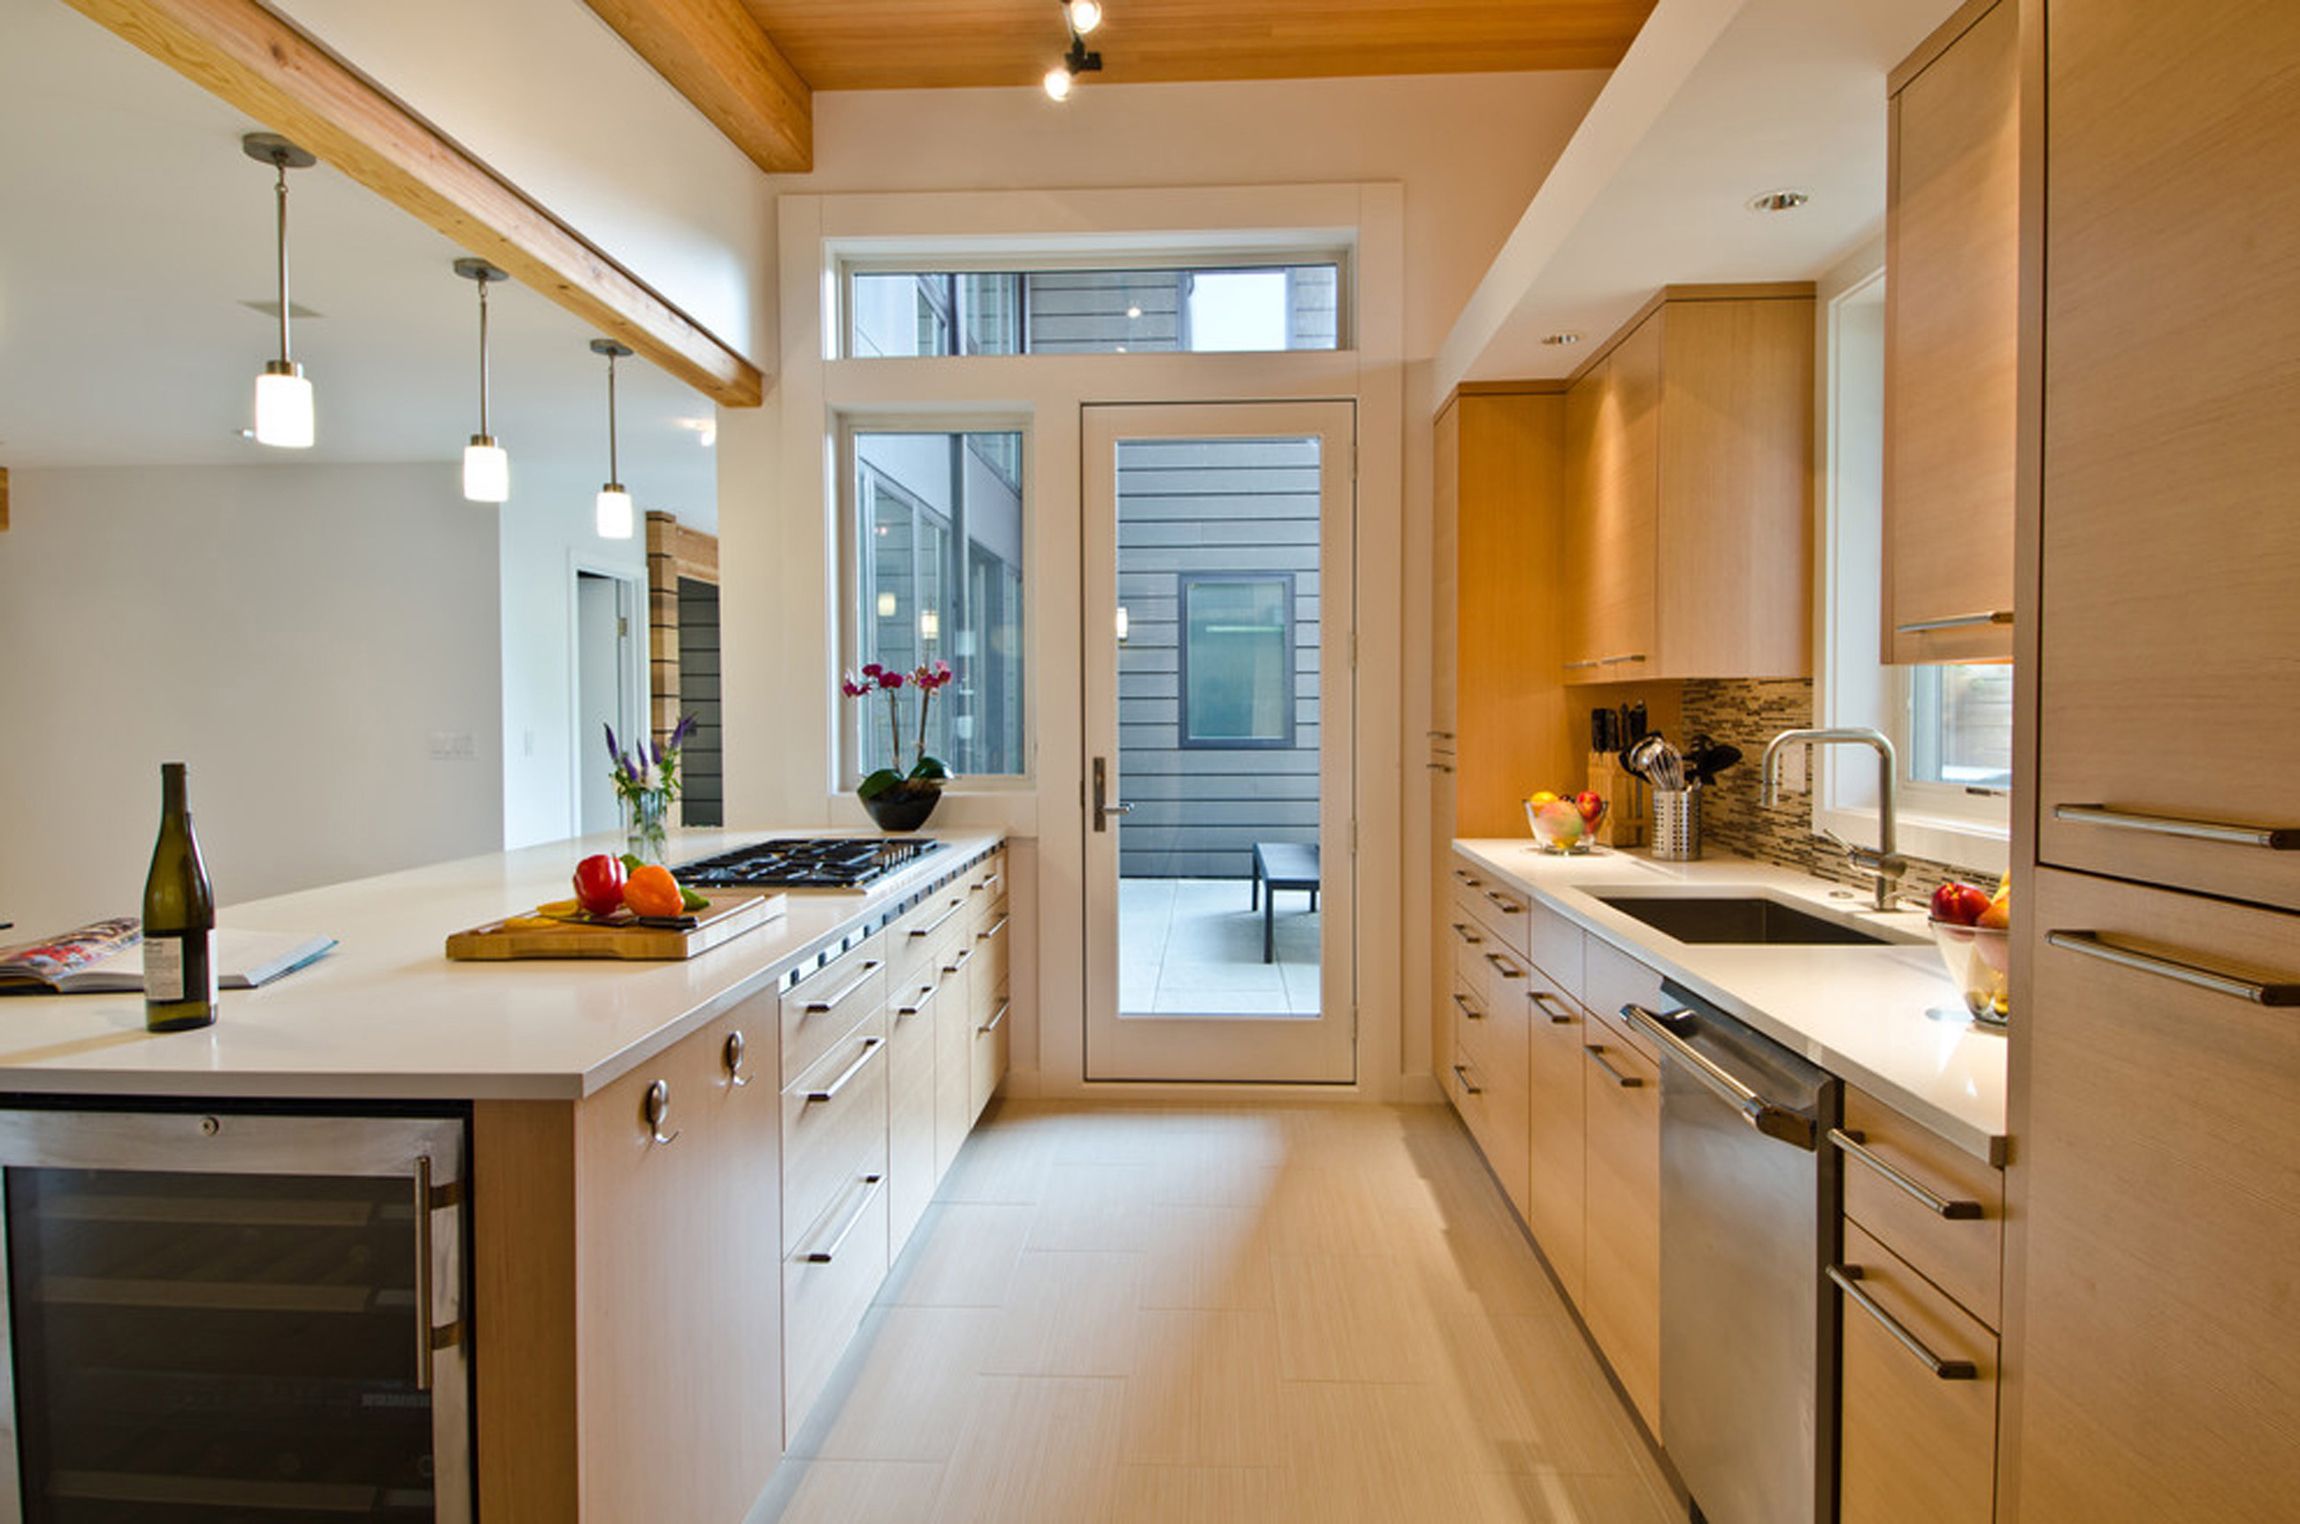 Andersen Windows Design Ideas For Stunning Kitchen Contemporary Design Ideas With Contemporary Kitchen Fir Cabinet Fir Cabinets Galley Kitchen Glass Door Kitchen Island (View 15 of 39)